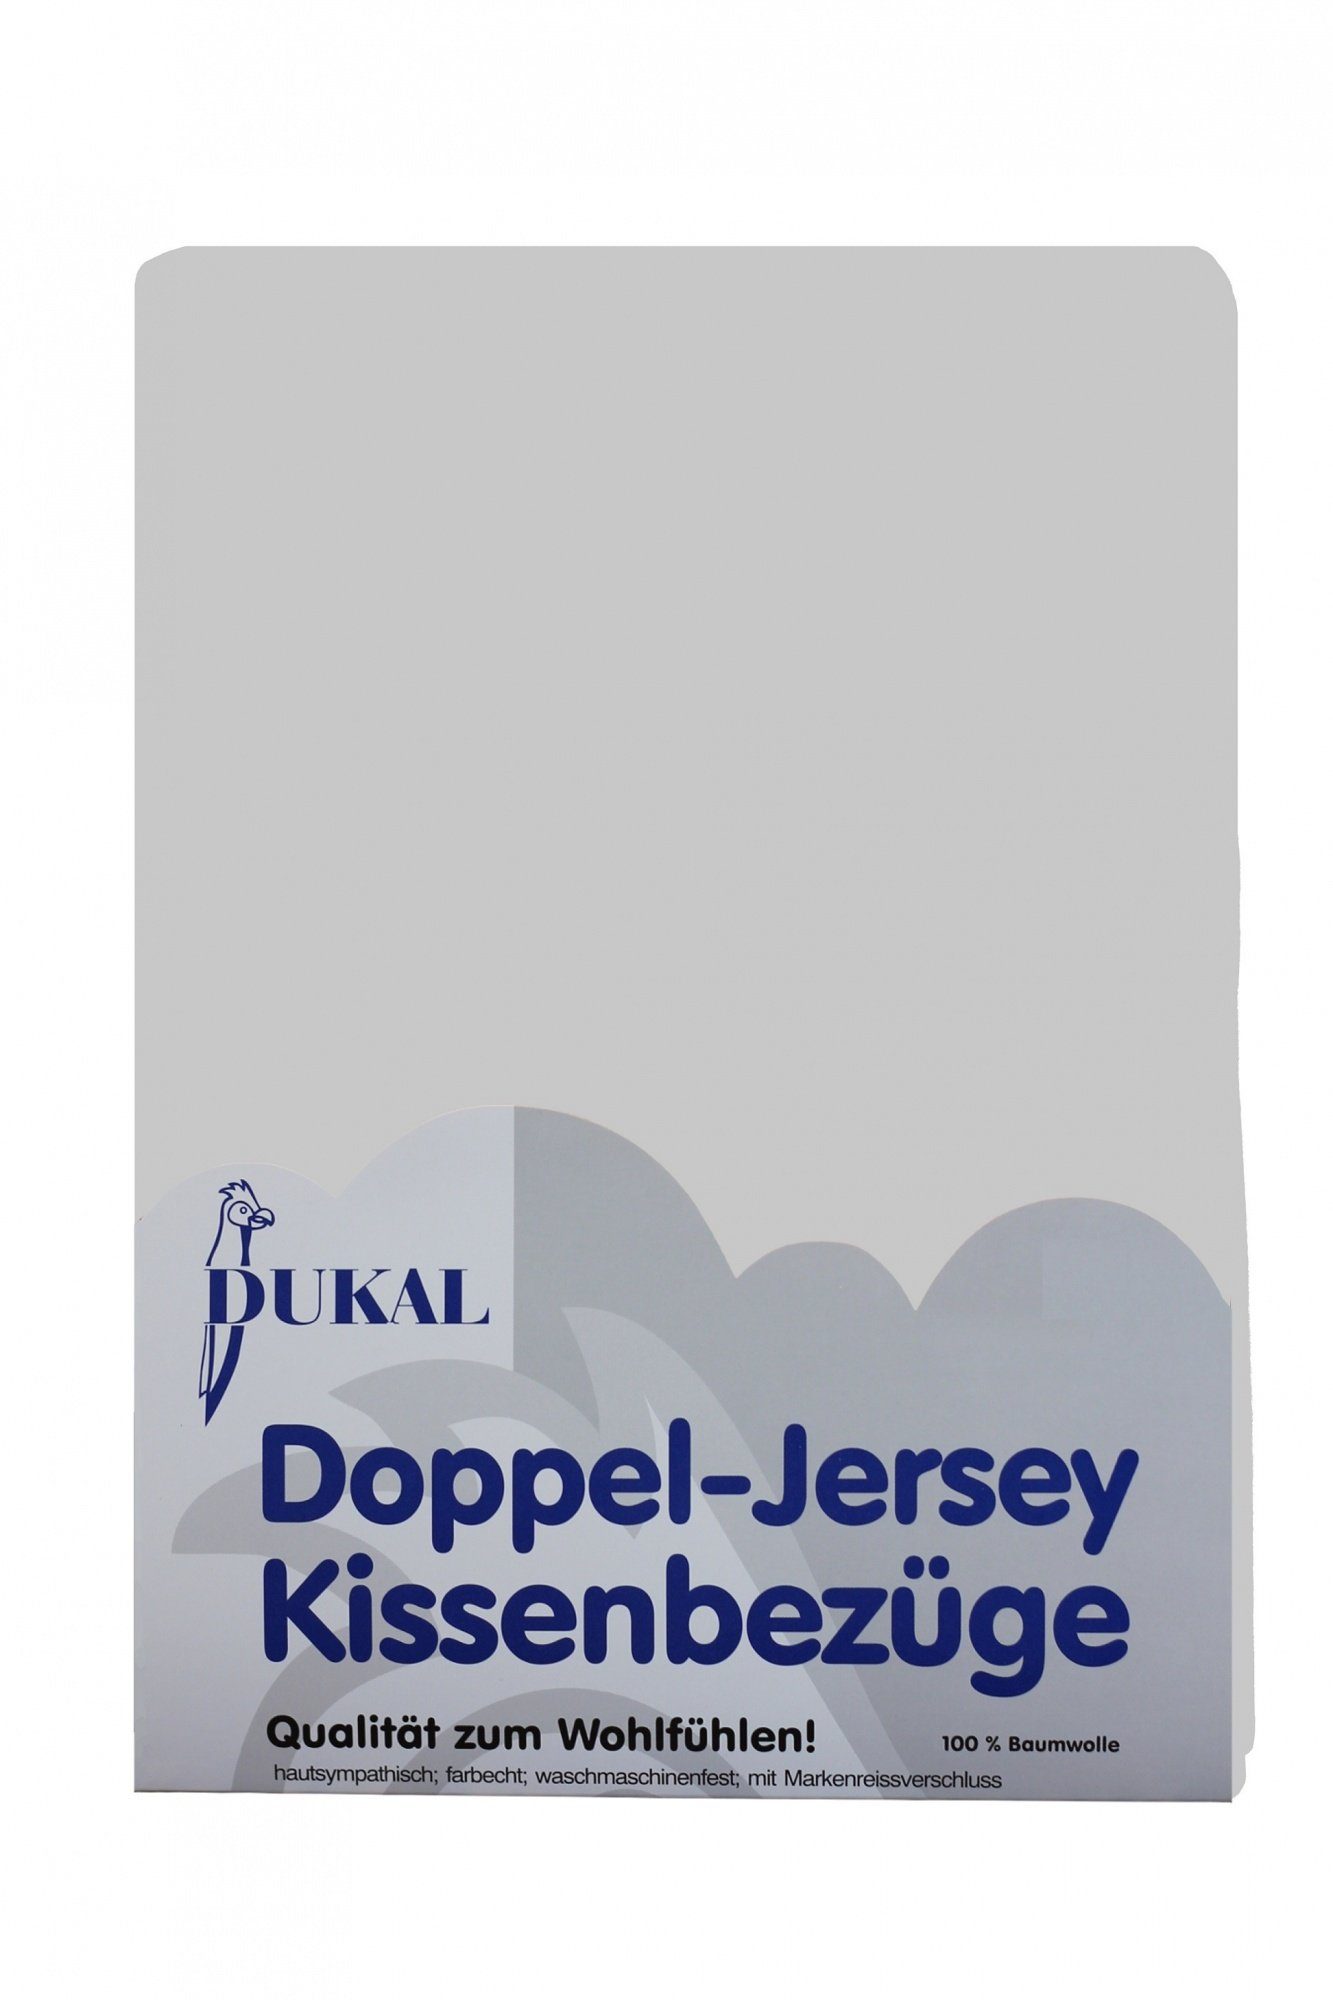 Kissenbezüge aus hochwertigem Doppel-Jersey, 100% Baumwolle, DUKAL (1 Stück), 50x70 cm, mit Reißverschluss, Made in Germany